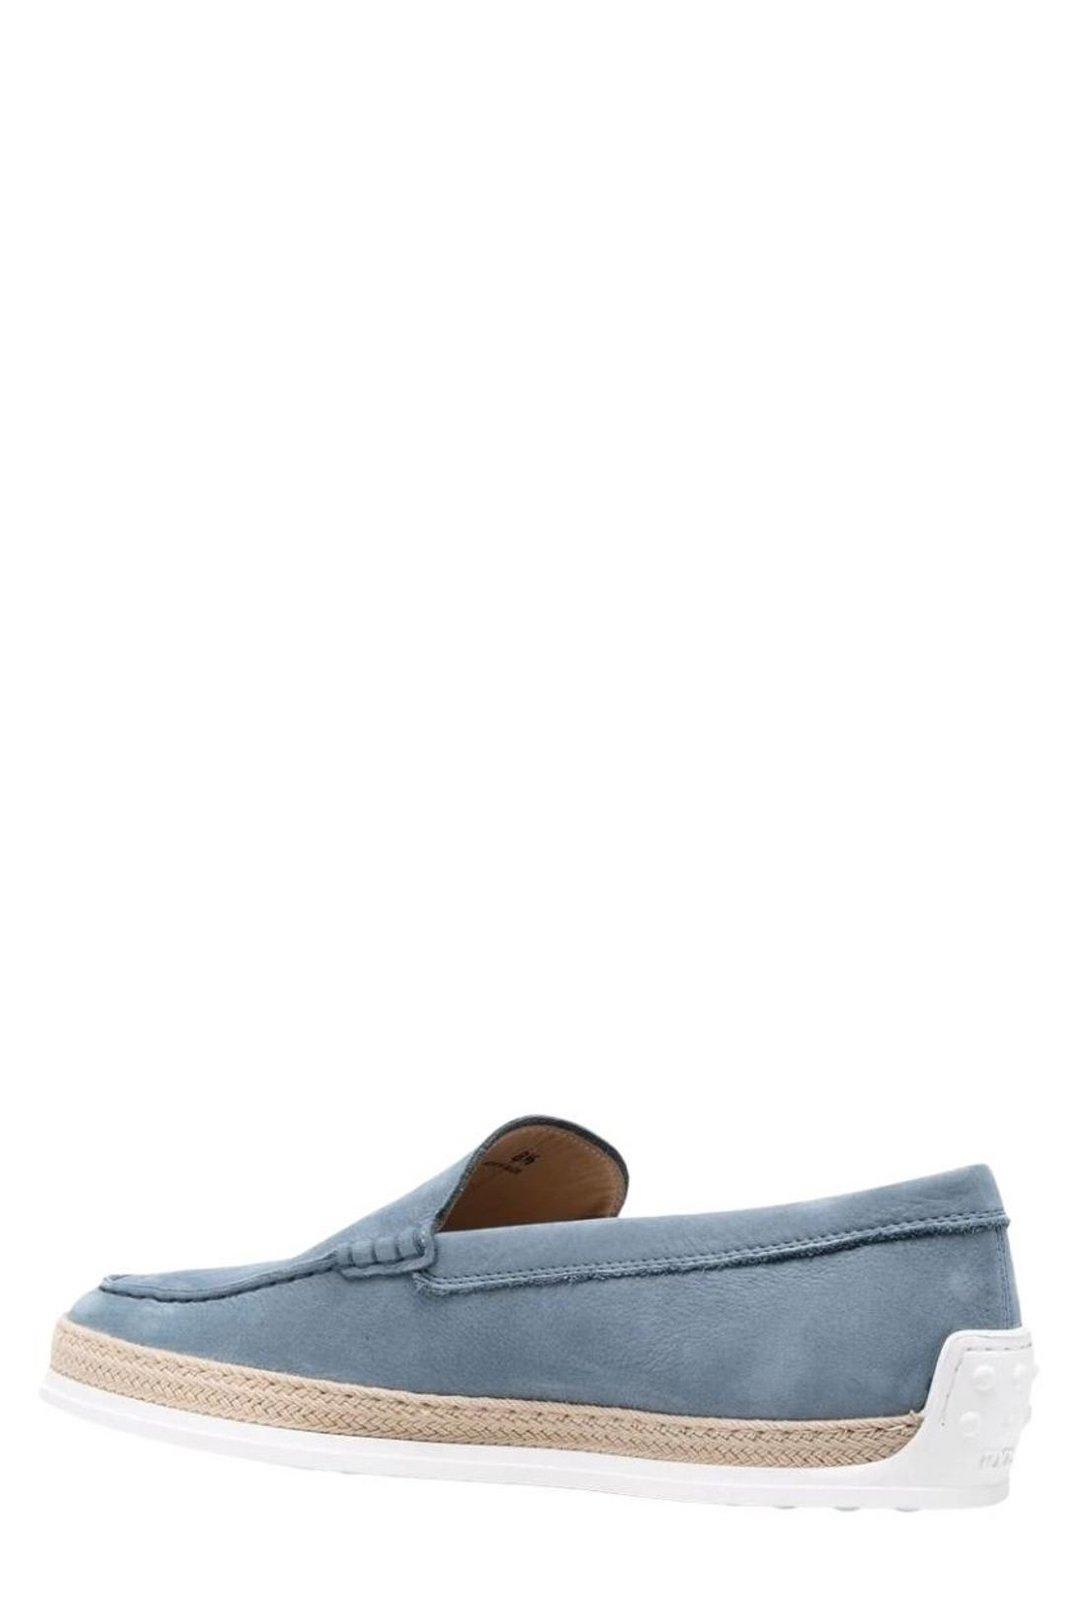 Shop Tod's Nuova Pantofola Slip-on Loafers